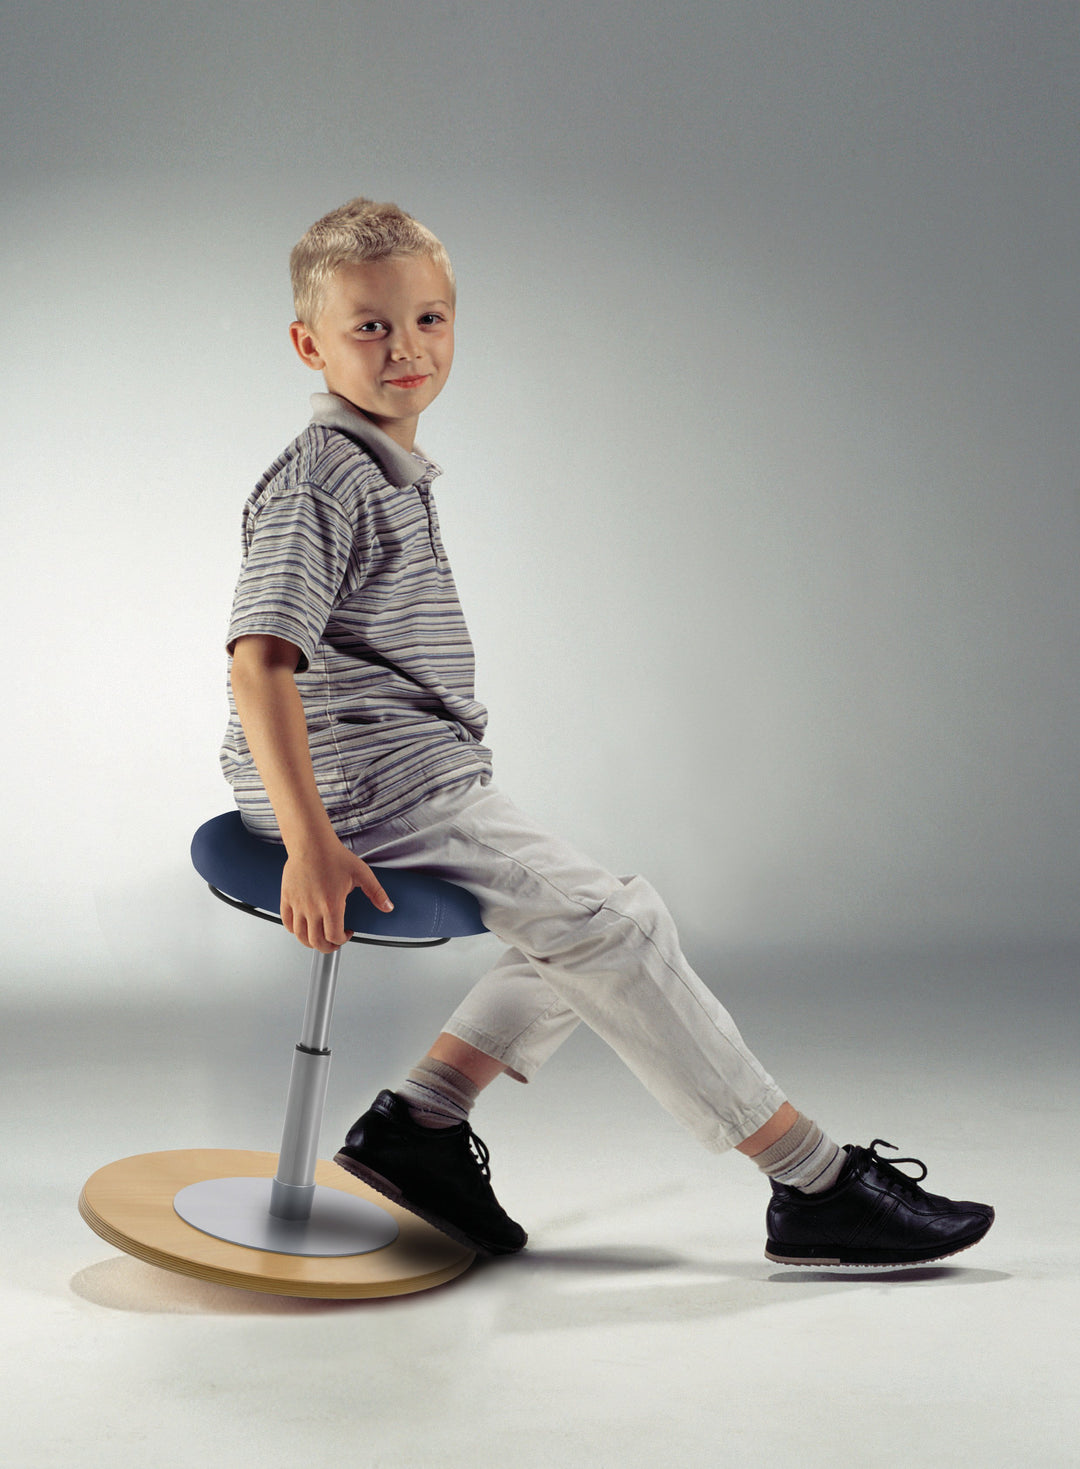 Mayer MyErgosit Taboret stołek balansujący krzesło ergonomiczny 54-79cm podstawa sklejka naturalna 1168 N